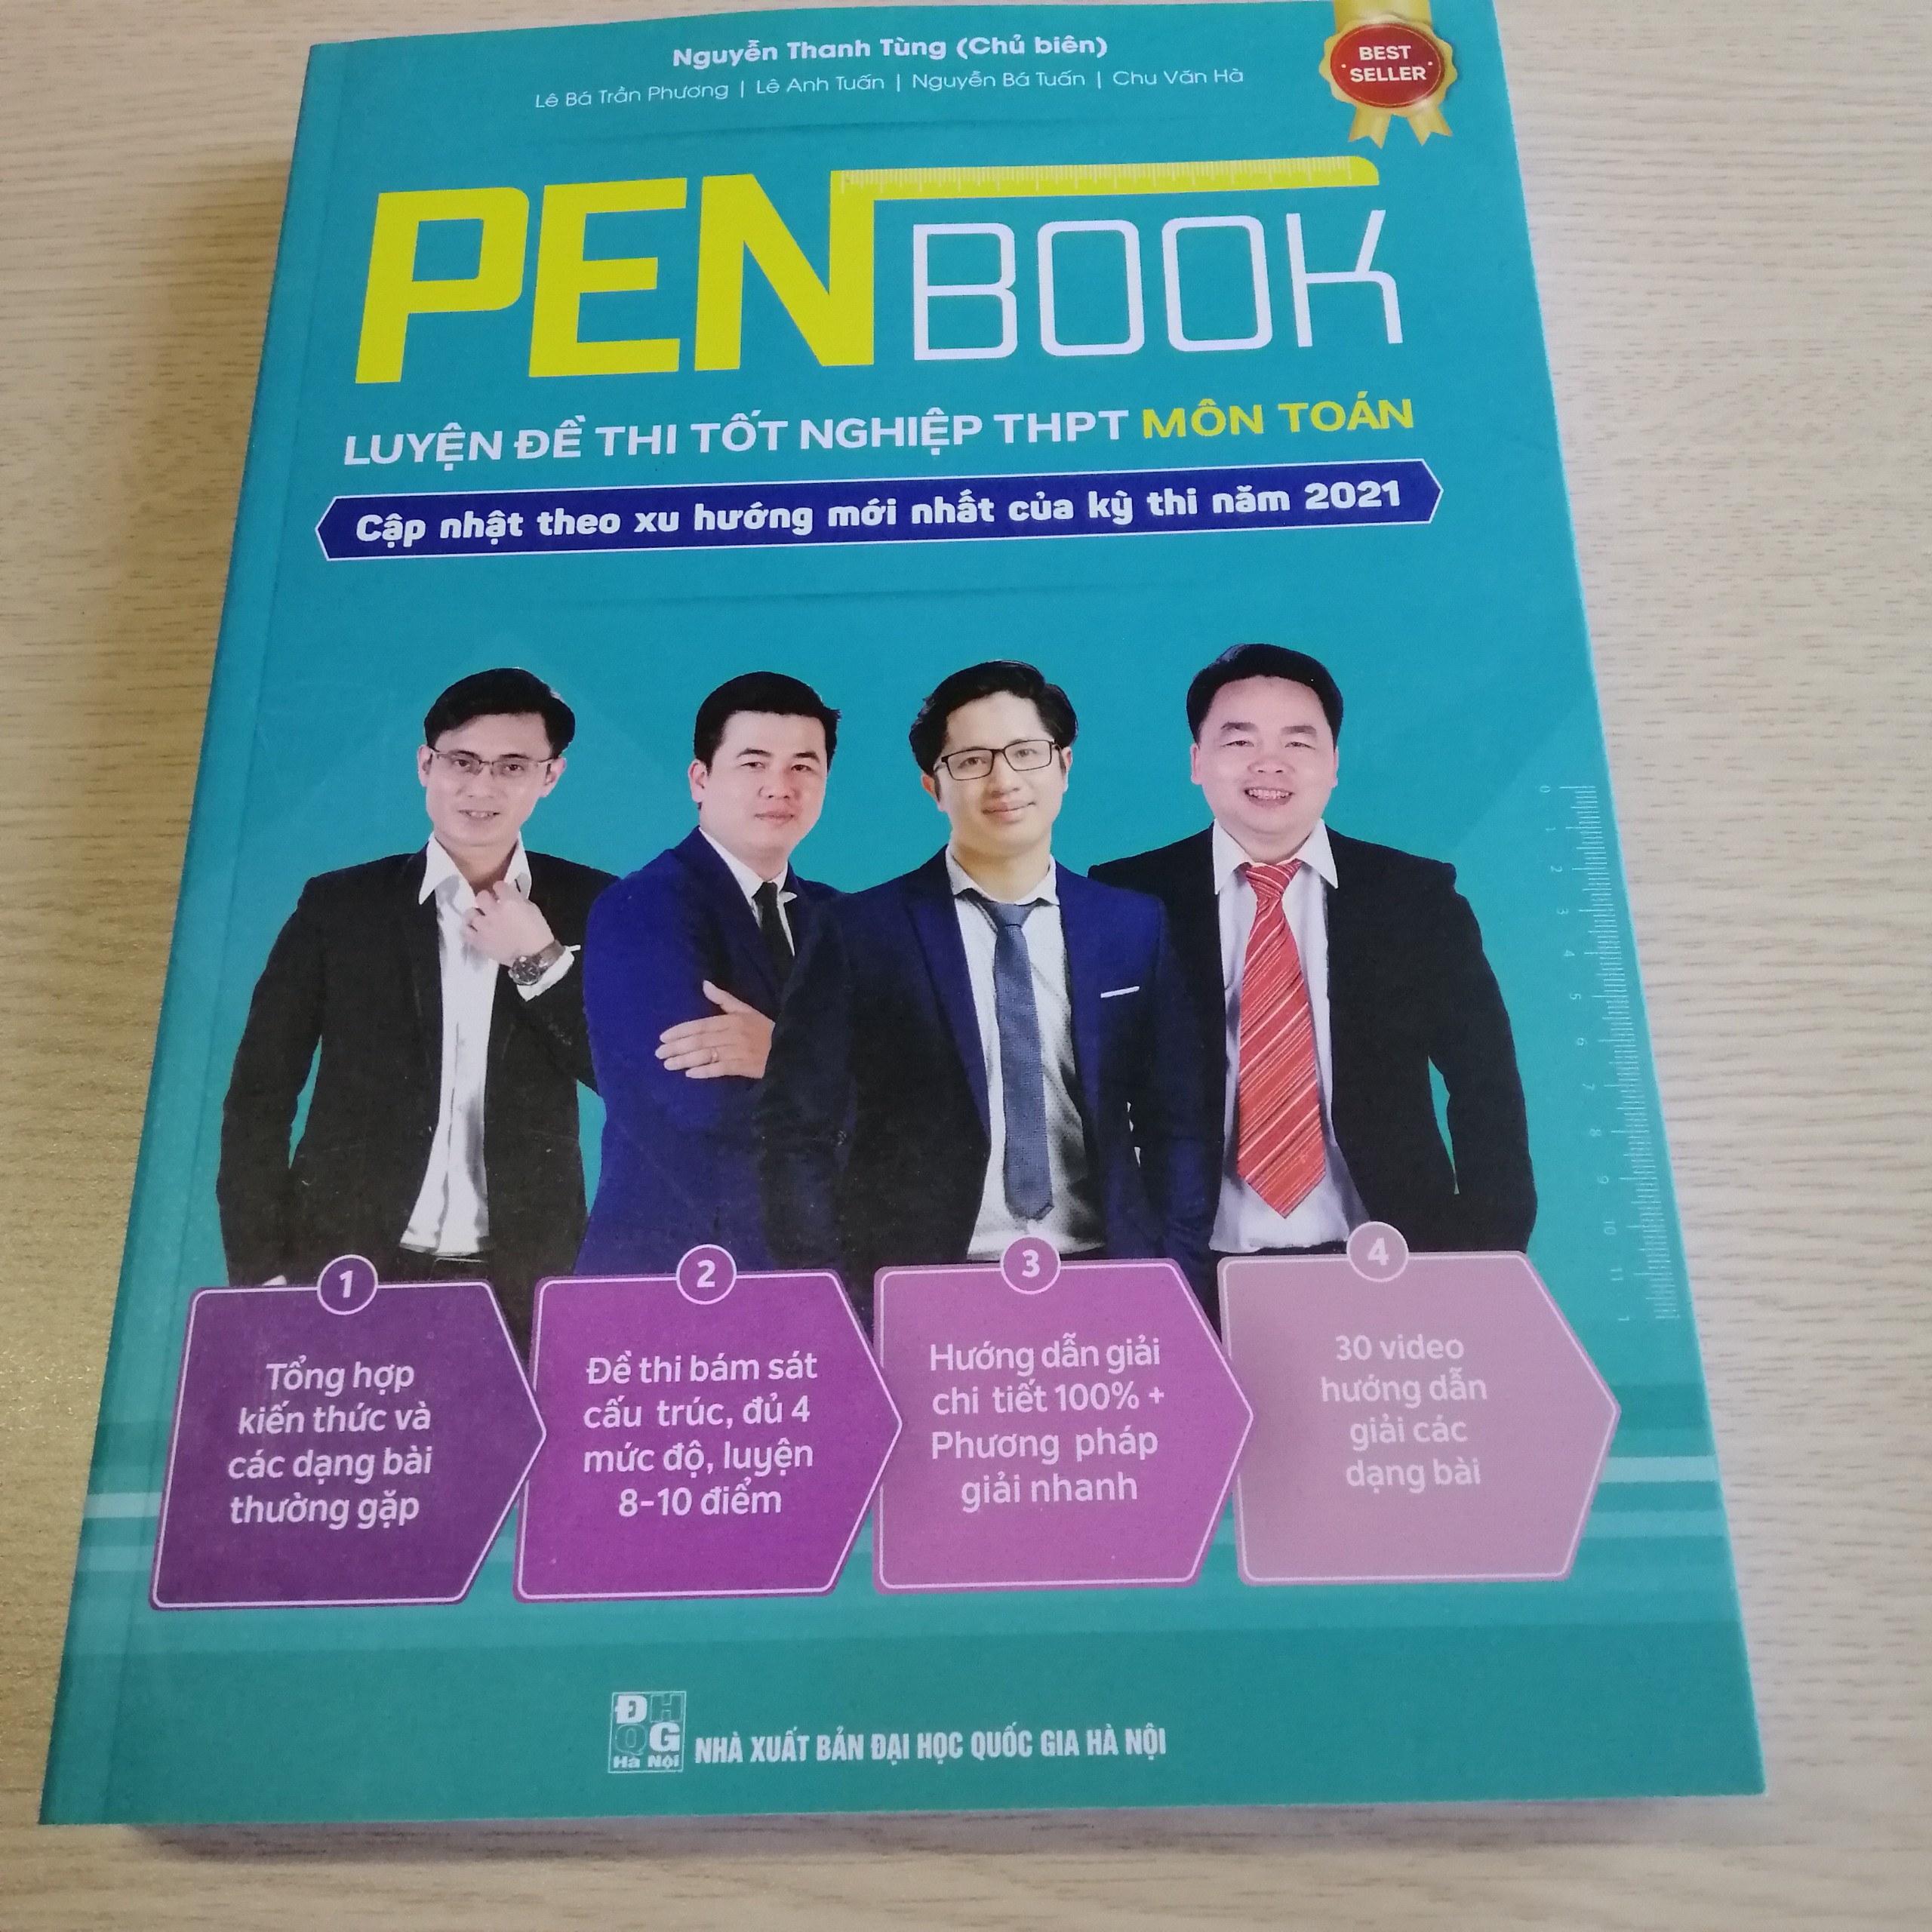 PENBOOK - Luyện đề thi Tốt nghiệp THPT Môn Toán - 2021